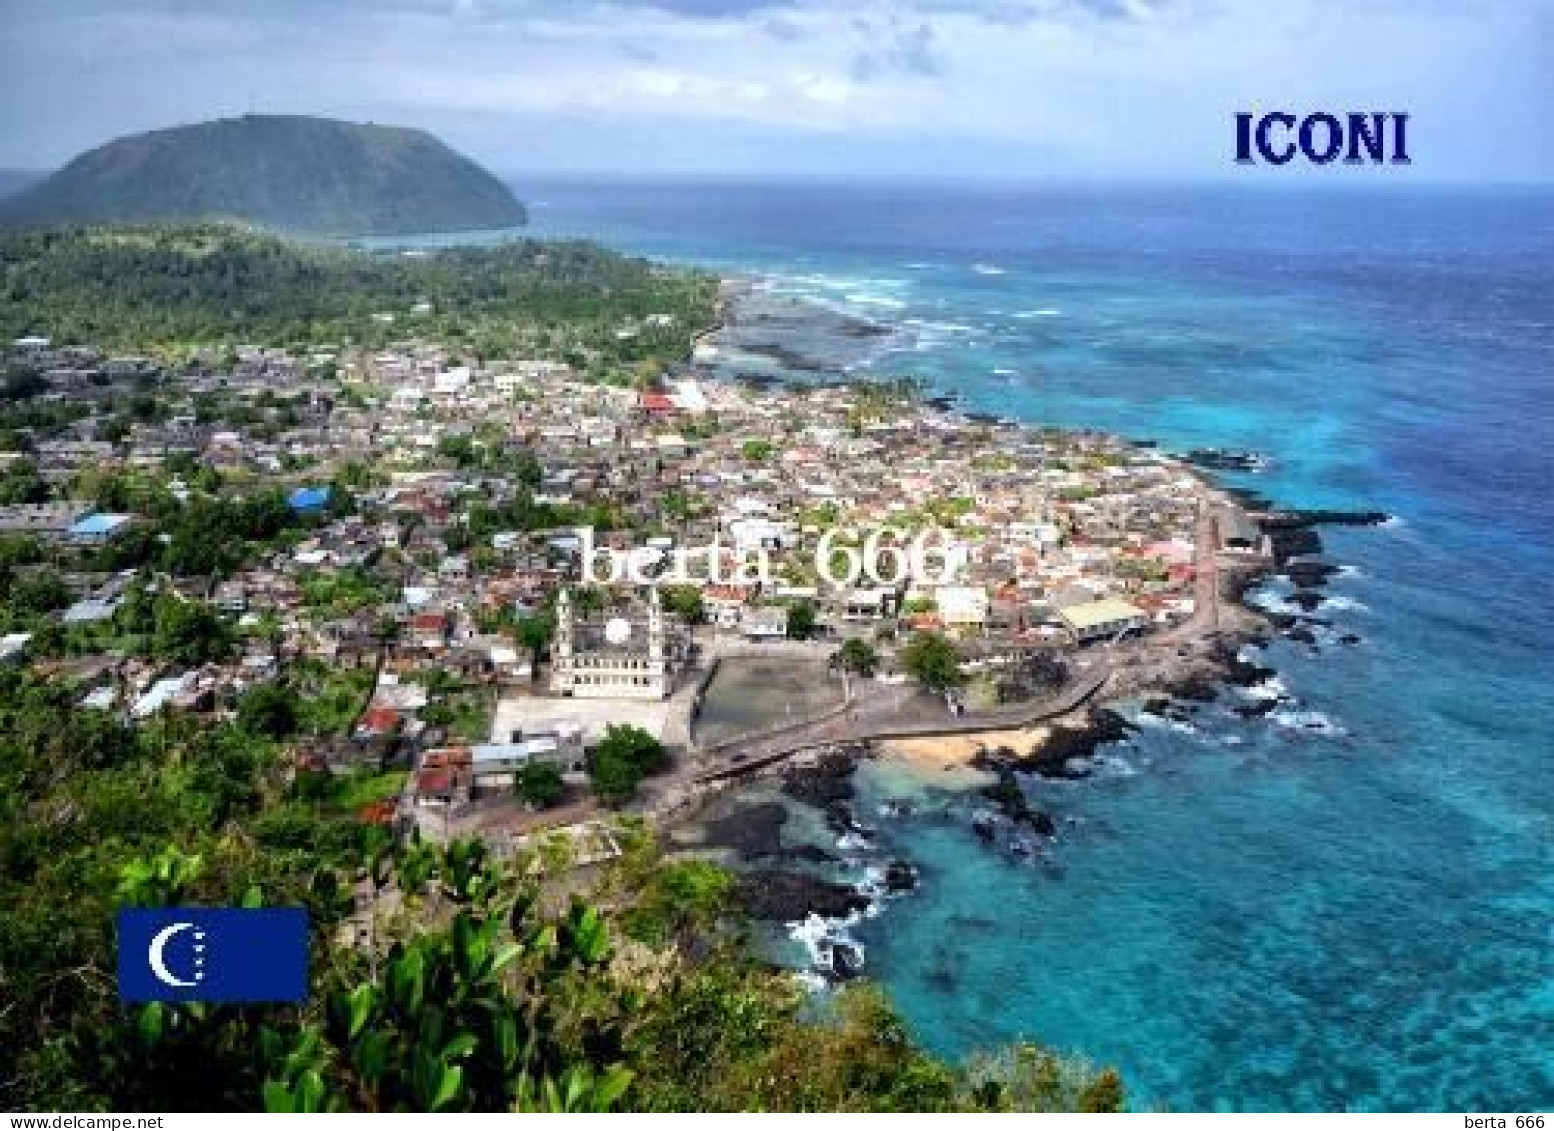 Comoros Grande Comore Iconi Aerial View Comores New Postcard - Komoren